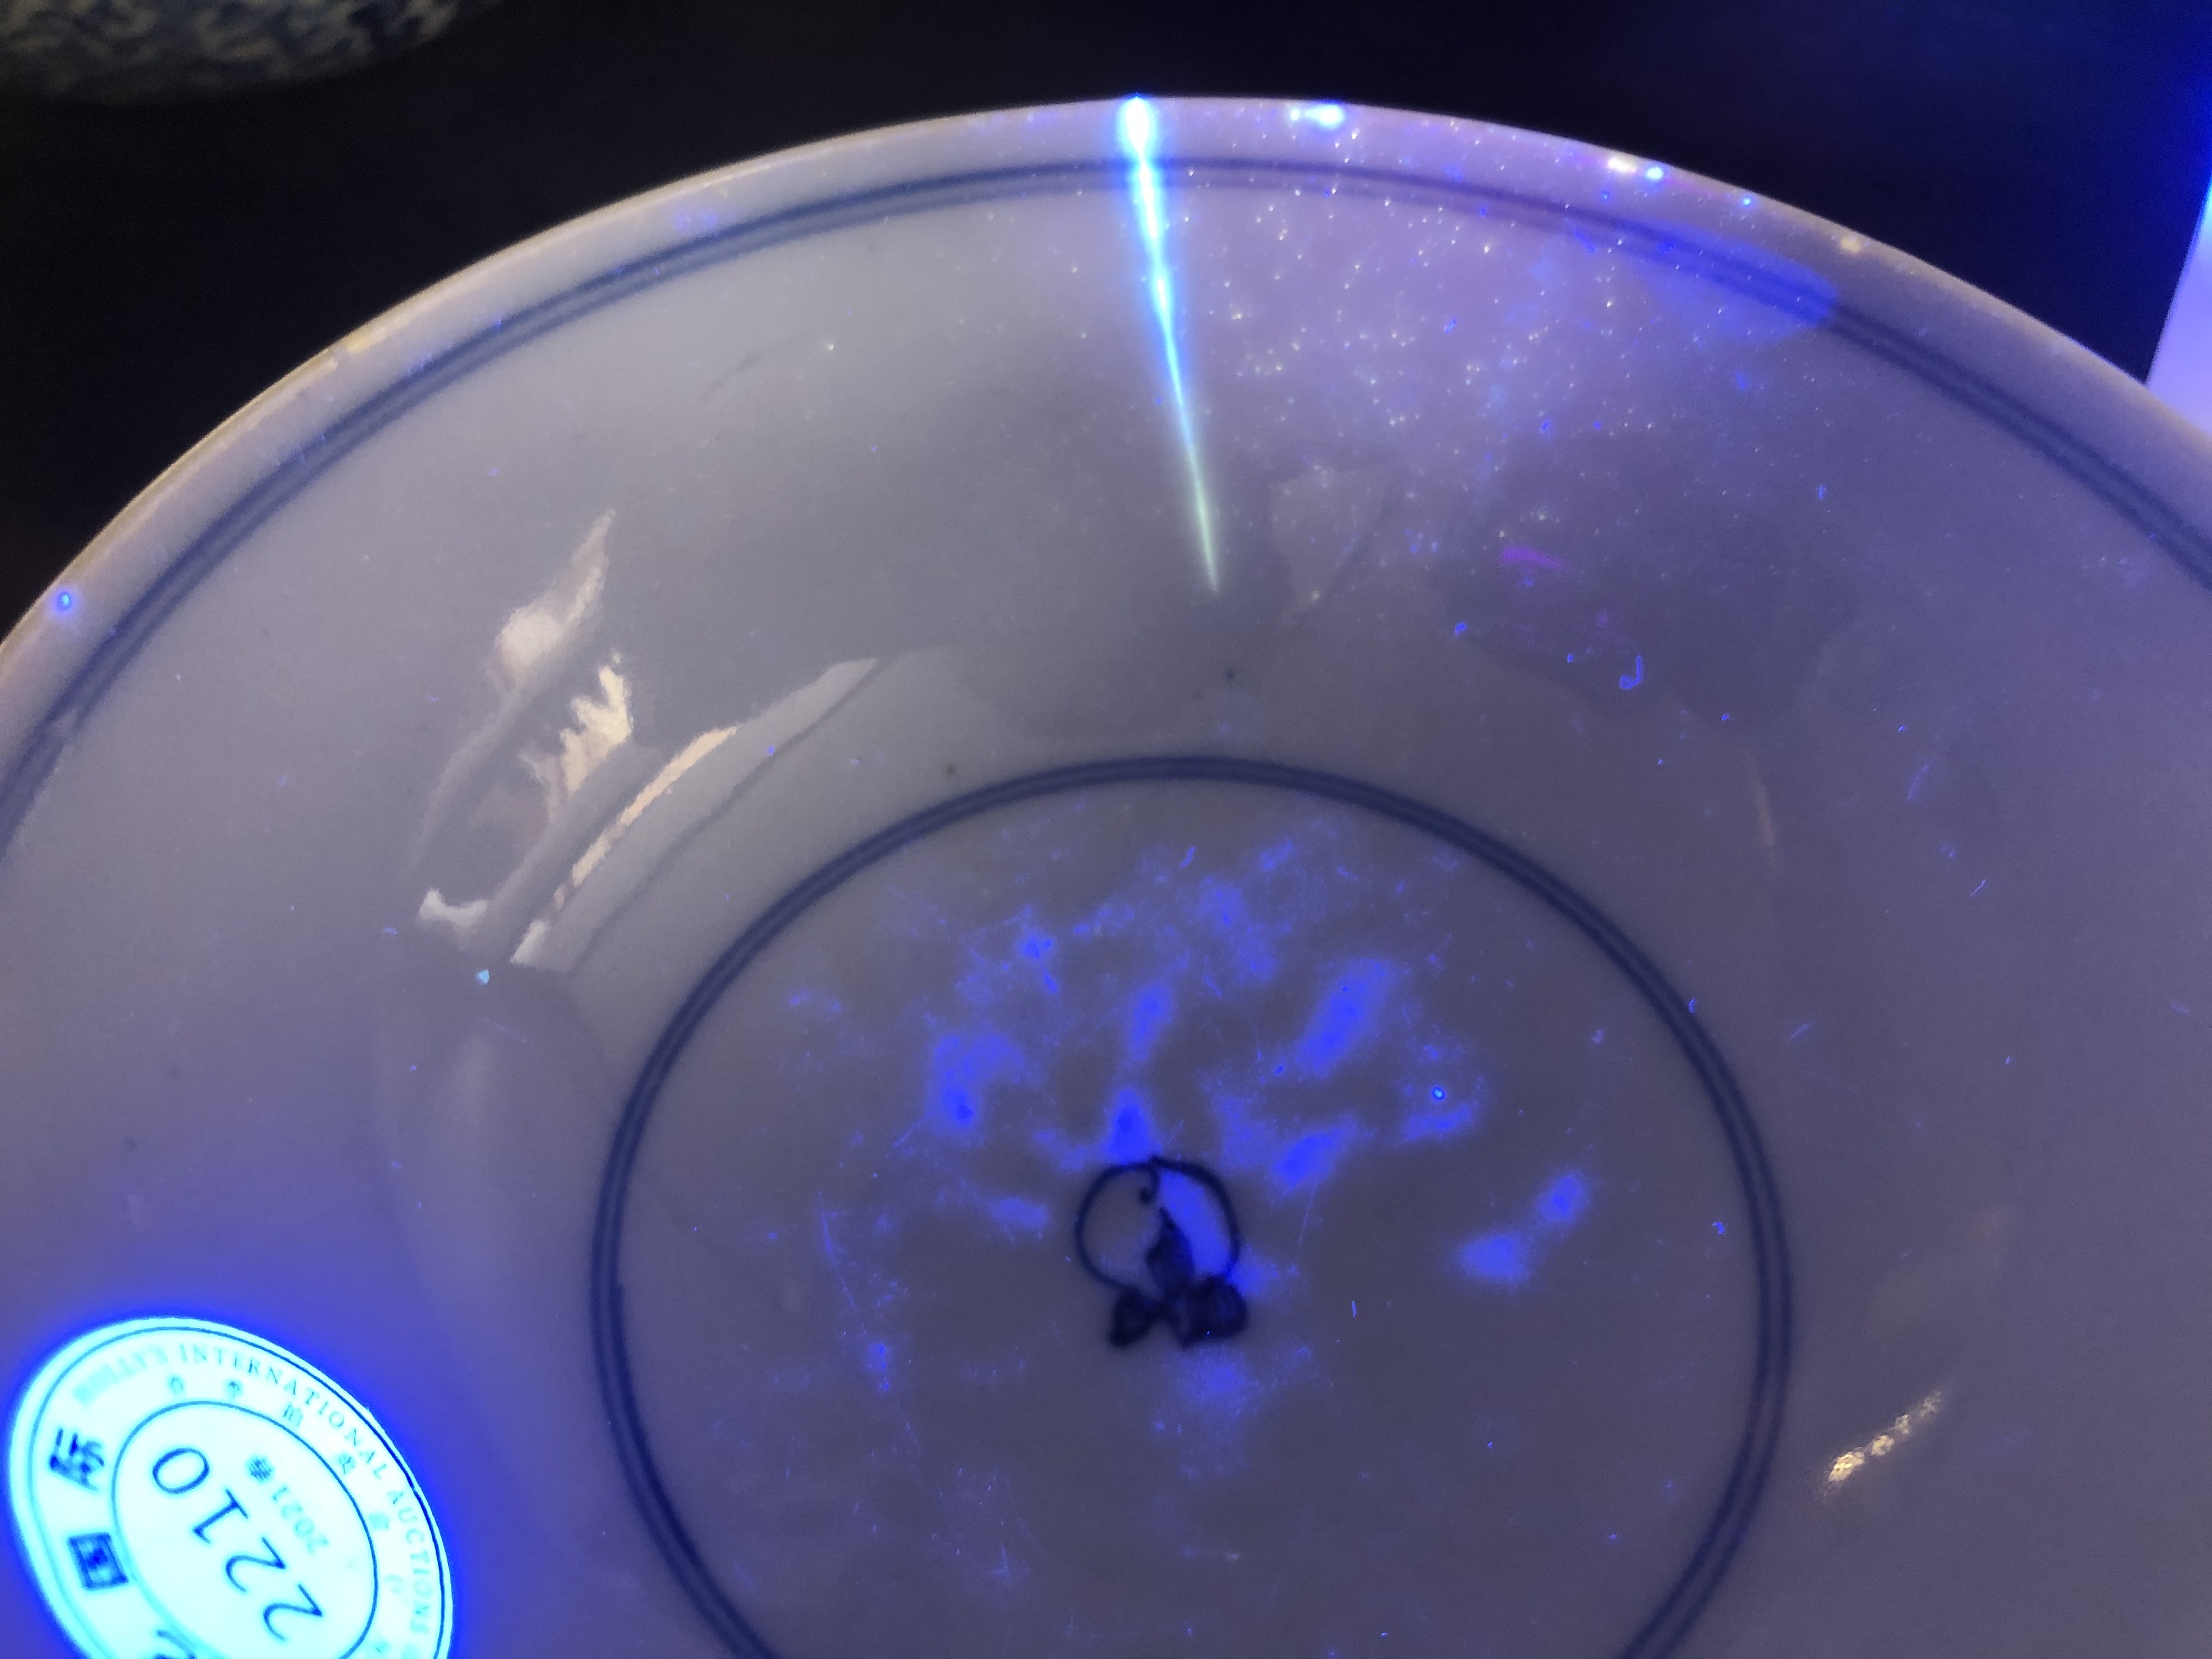 在蓝光灯照射下，牛先生竞买的瓷碗上有裂纹显现。